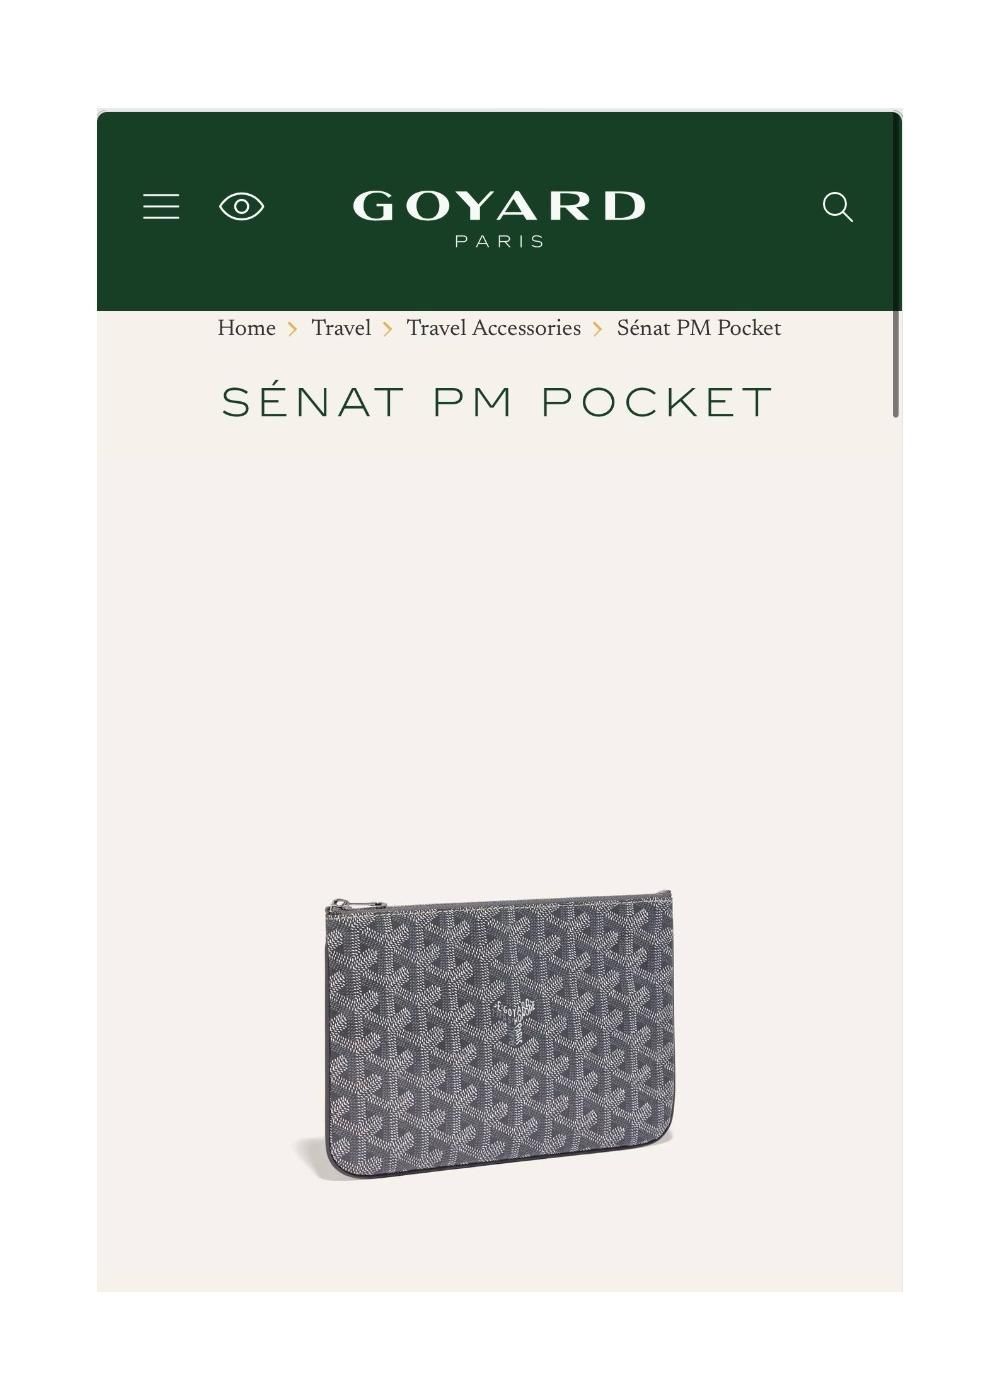 Goyard Senat PM Pocket